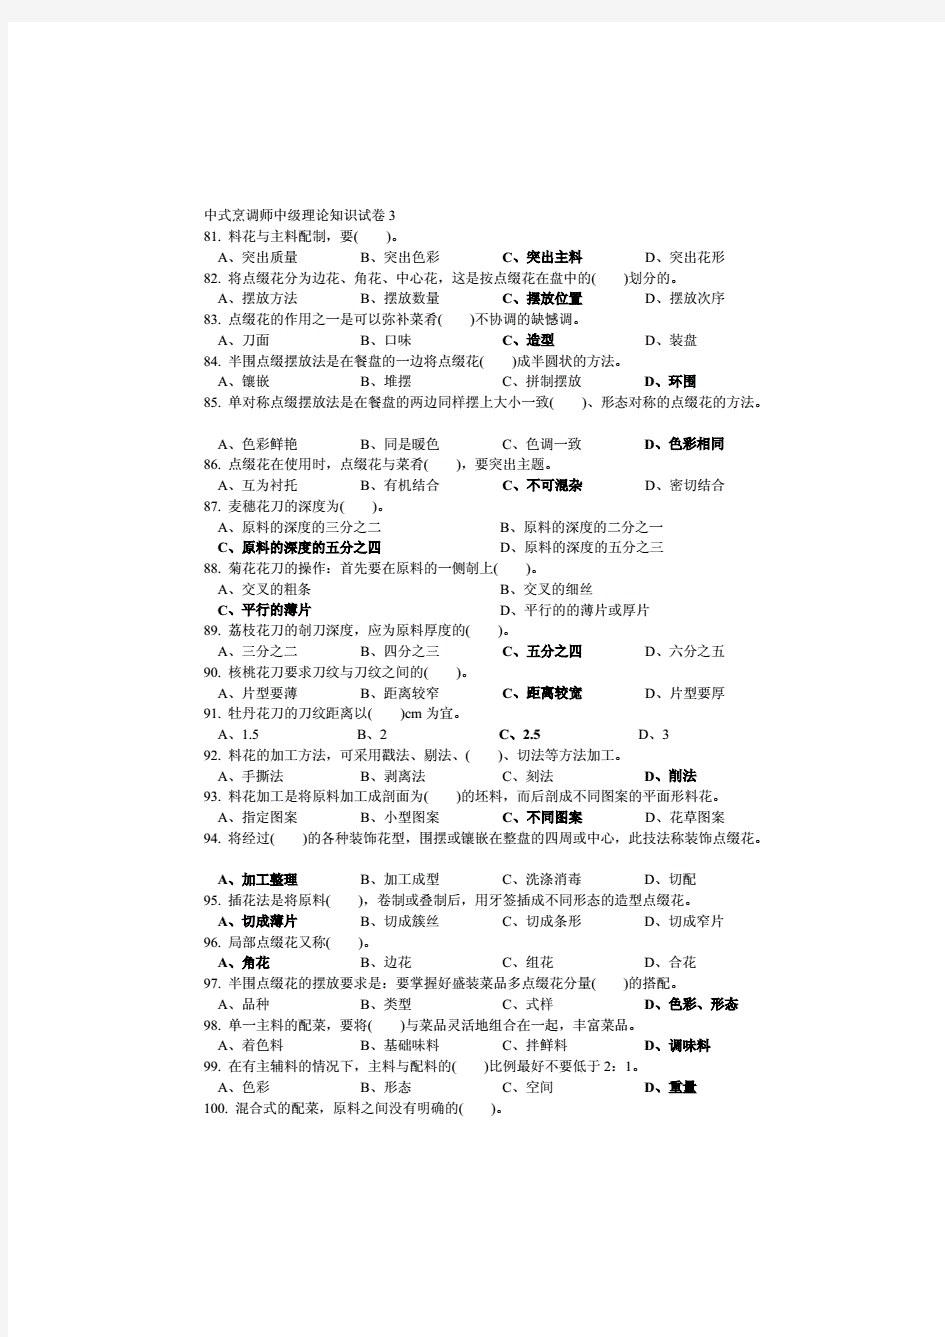 中式烹调师中级理论知识试卷3(附答案)